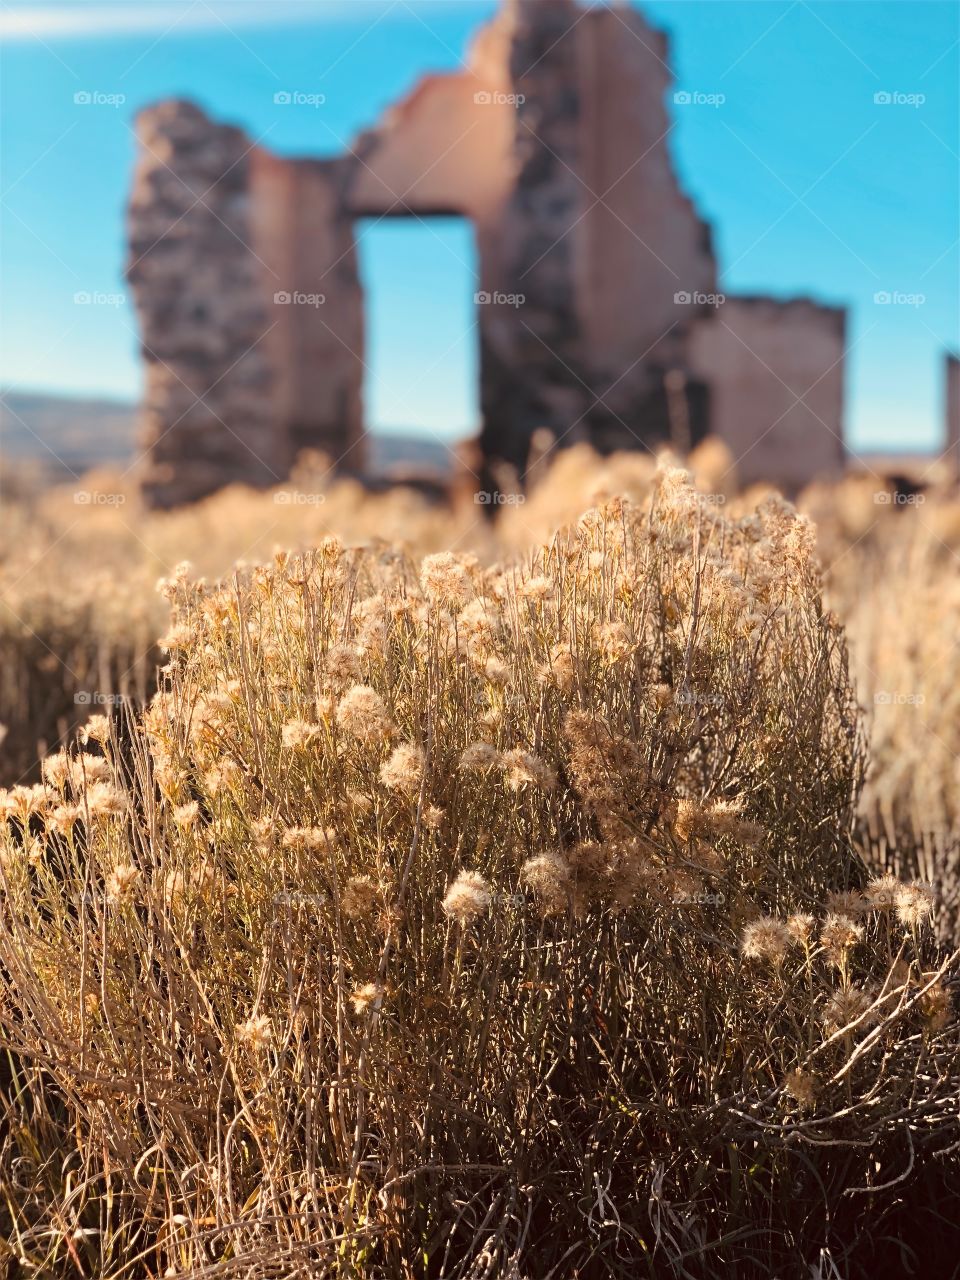 Abandoned house in the Utah desert